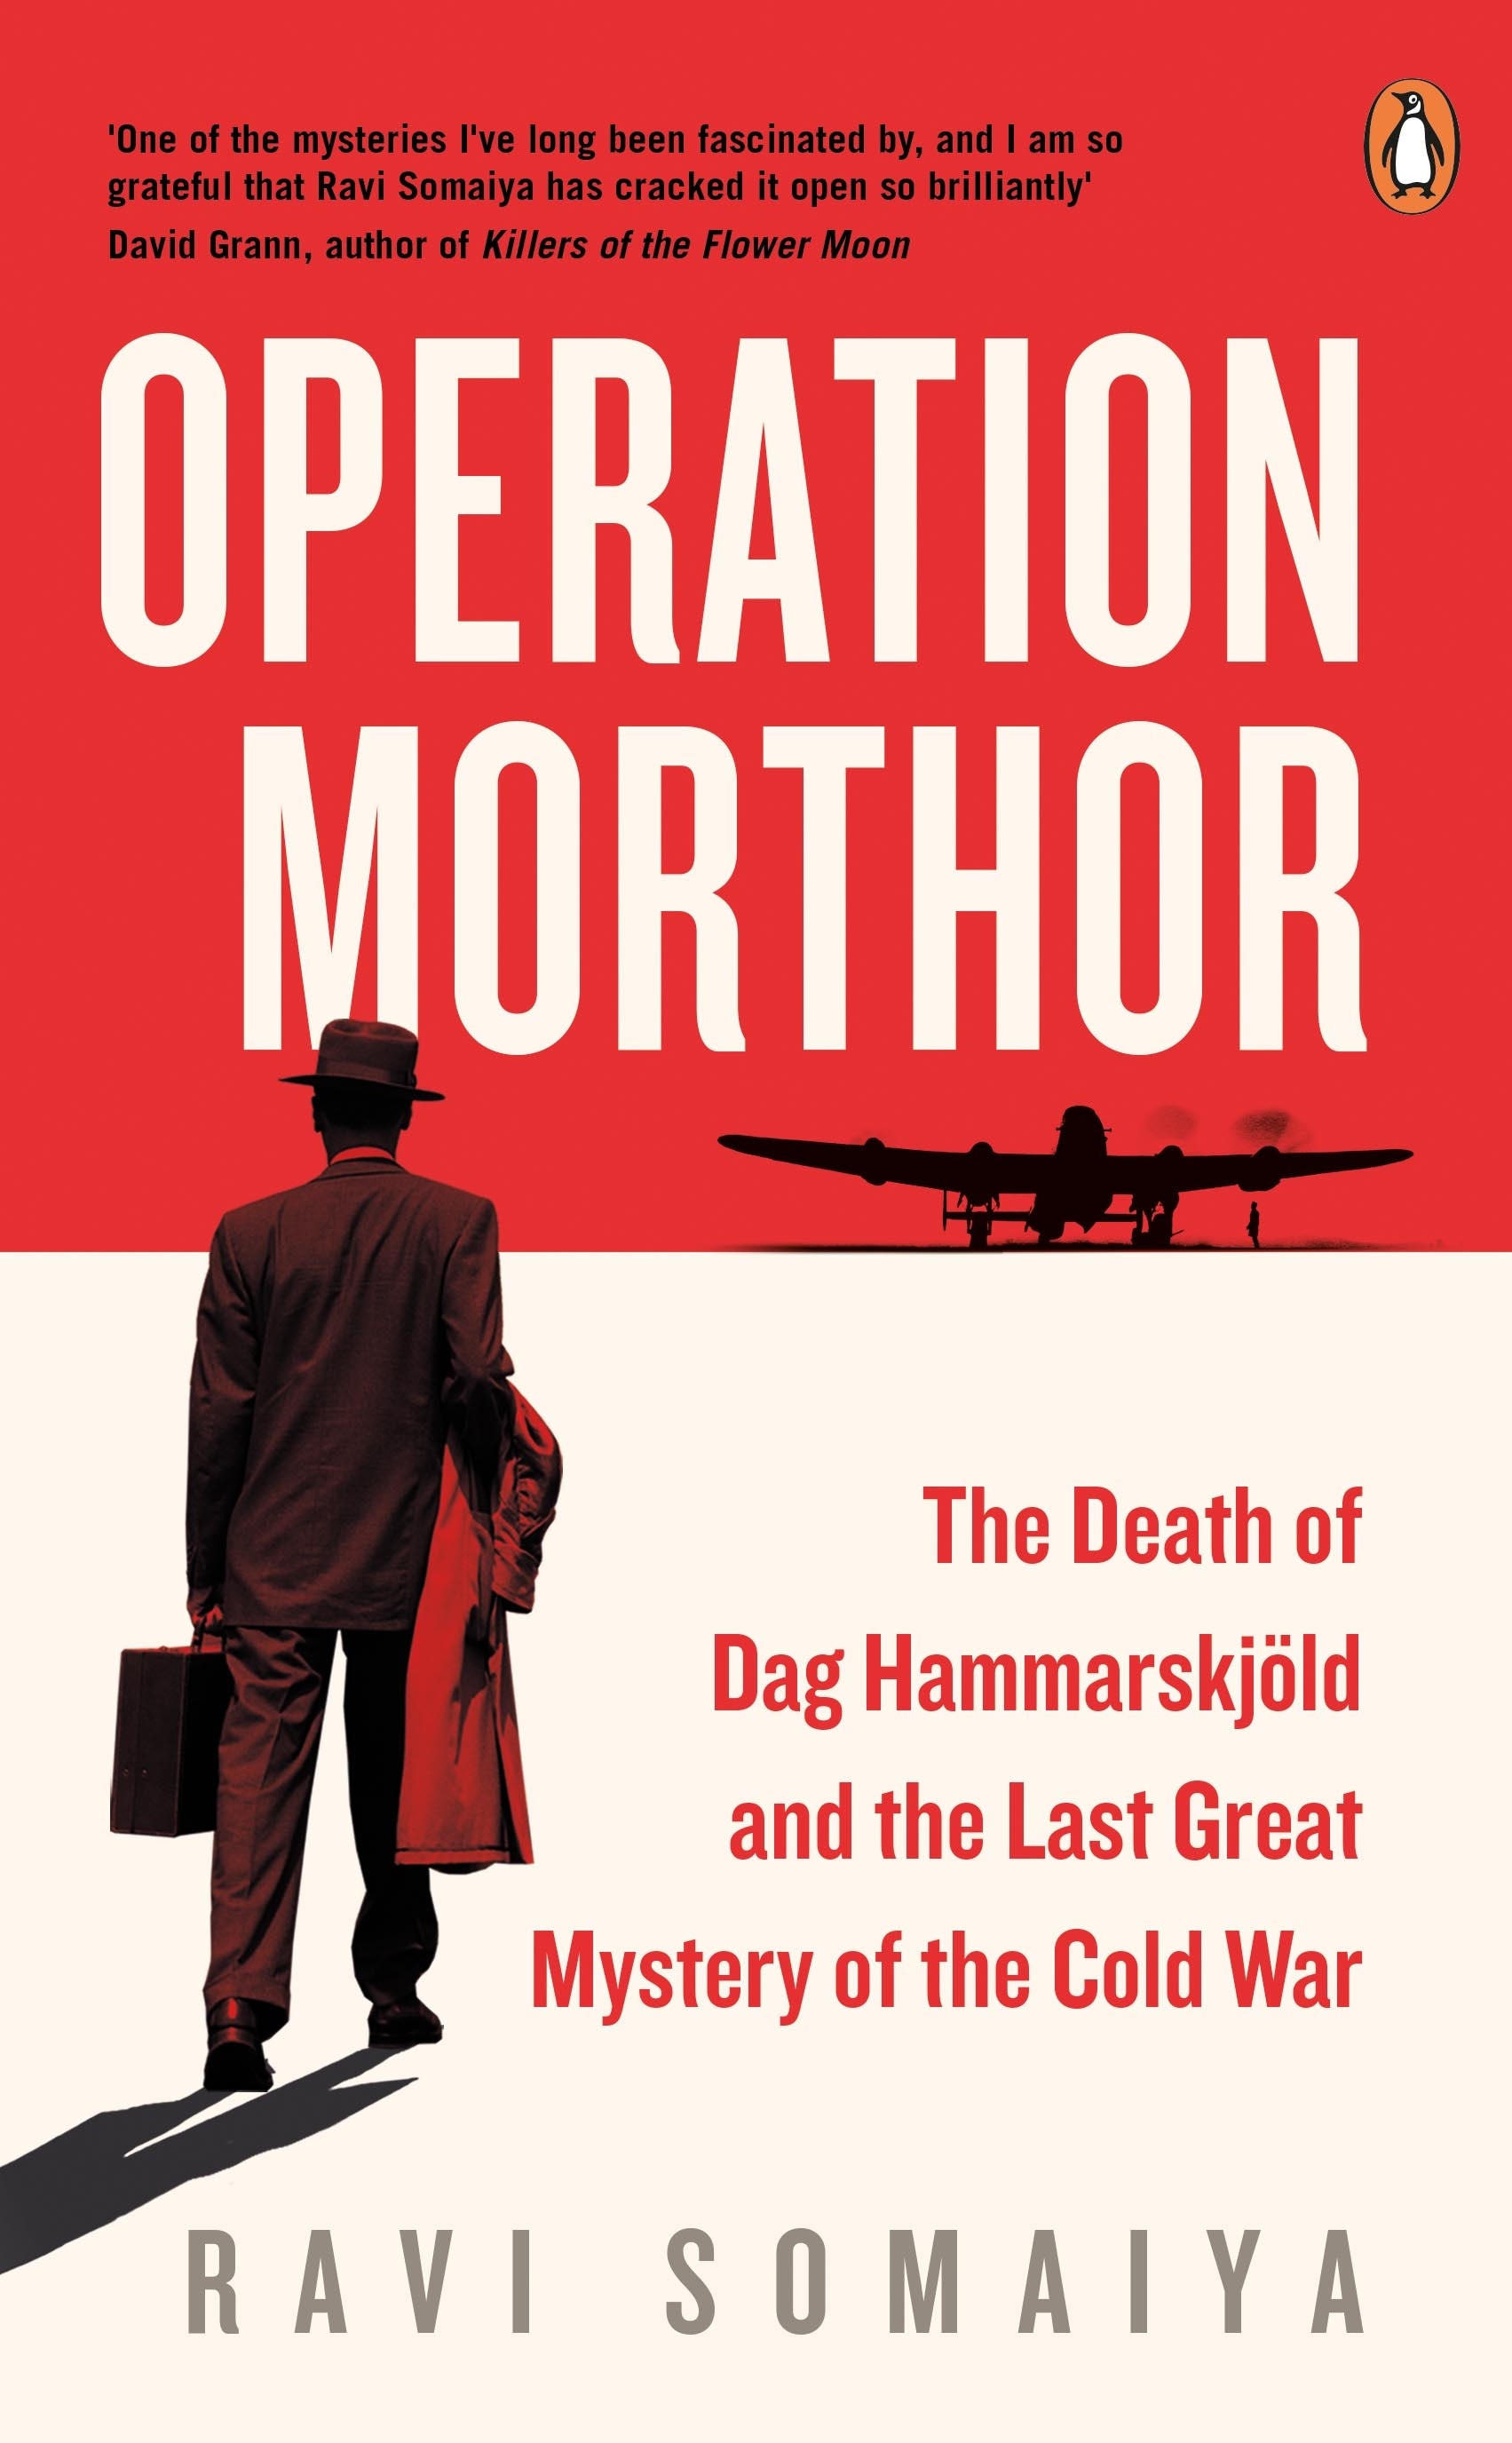 Book “Operation Morthor” by Ravi Somaiya — July 8, 2021